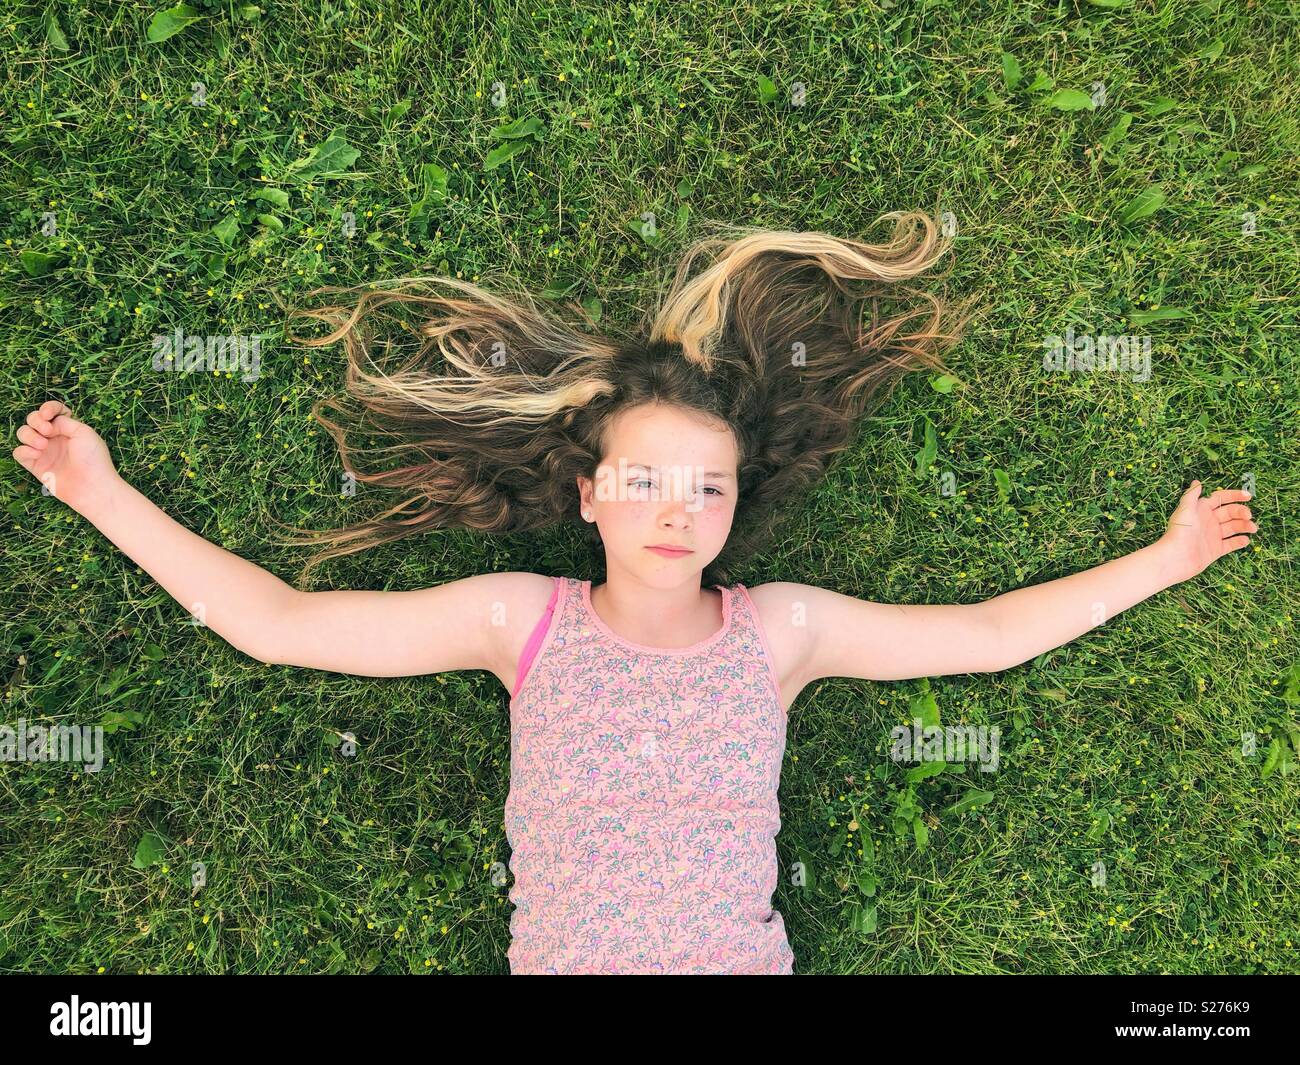 11 años de edad, niña recostada en la hierba con los brazos abiertos y grave expresión distante en la cara Foto de stock